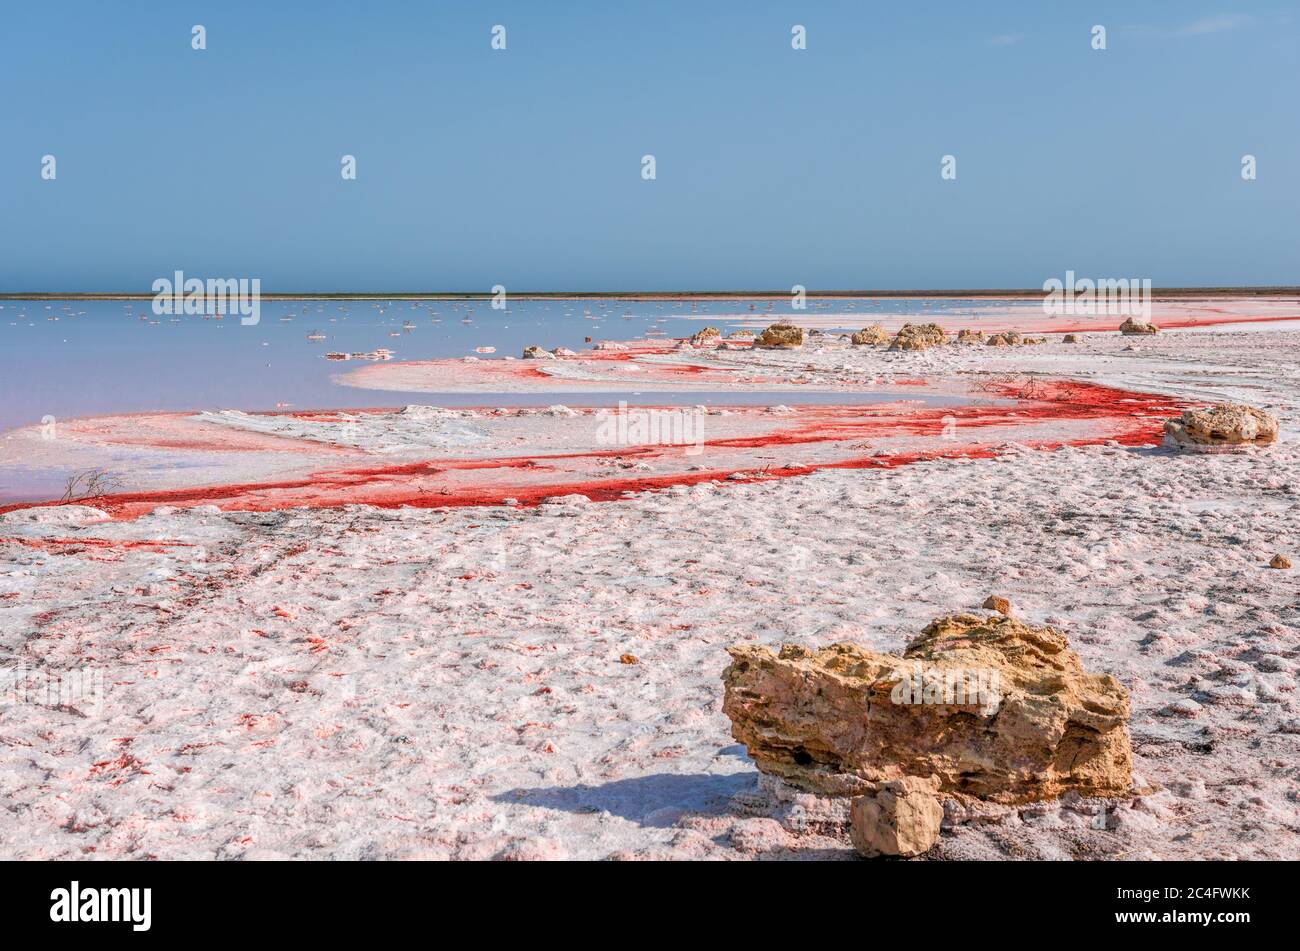 Saumure et sel d'un lac rose Koyash coloré par des microalgues Dunaliella salina, célèbre pour ses propriétés antioxydantes, enrichissant l'eau par le bêta-carotène Banque D'Images